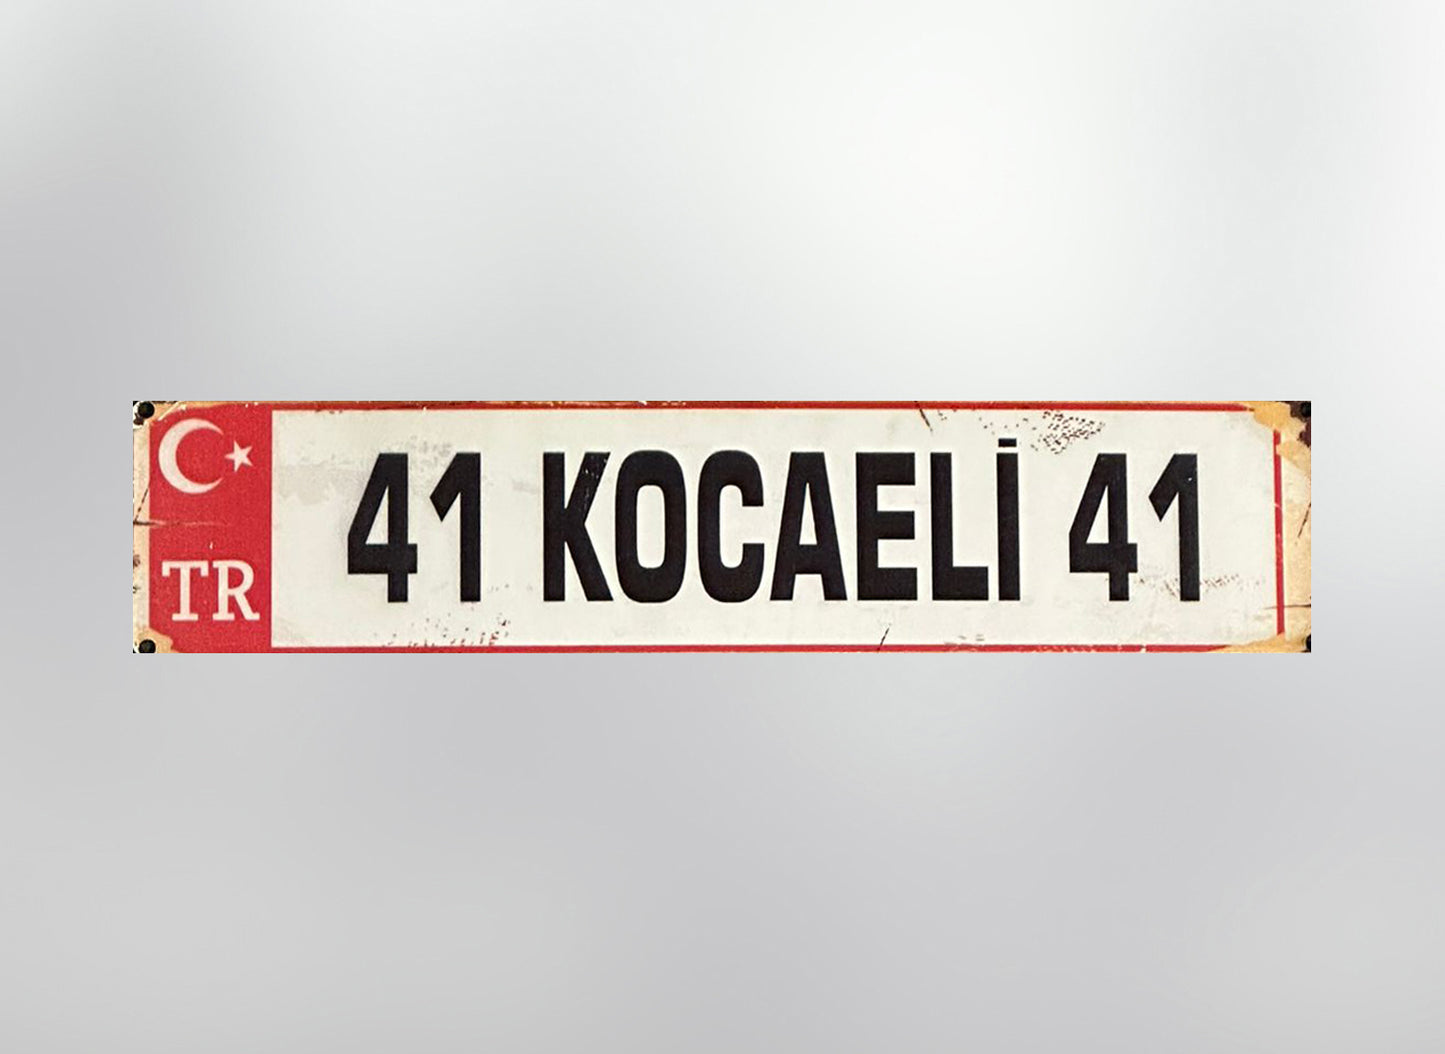 41 Kocaeli Plaka / Kennzeichen